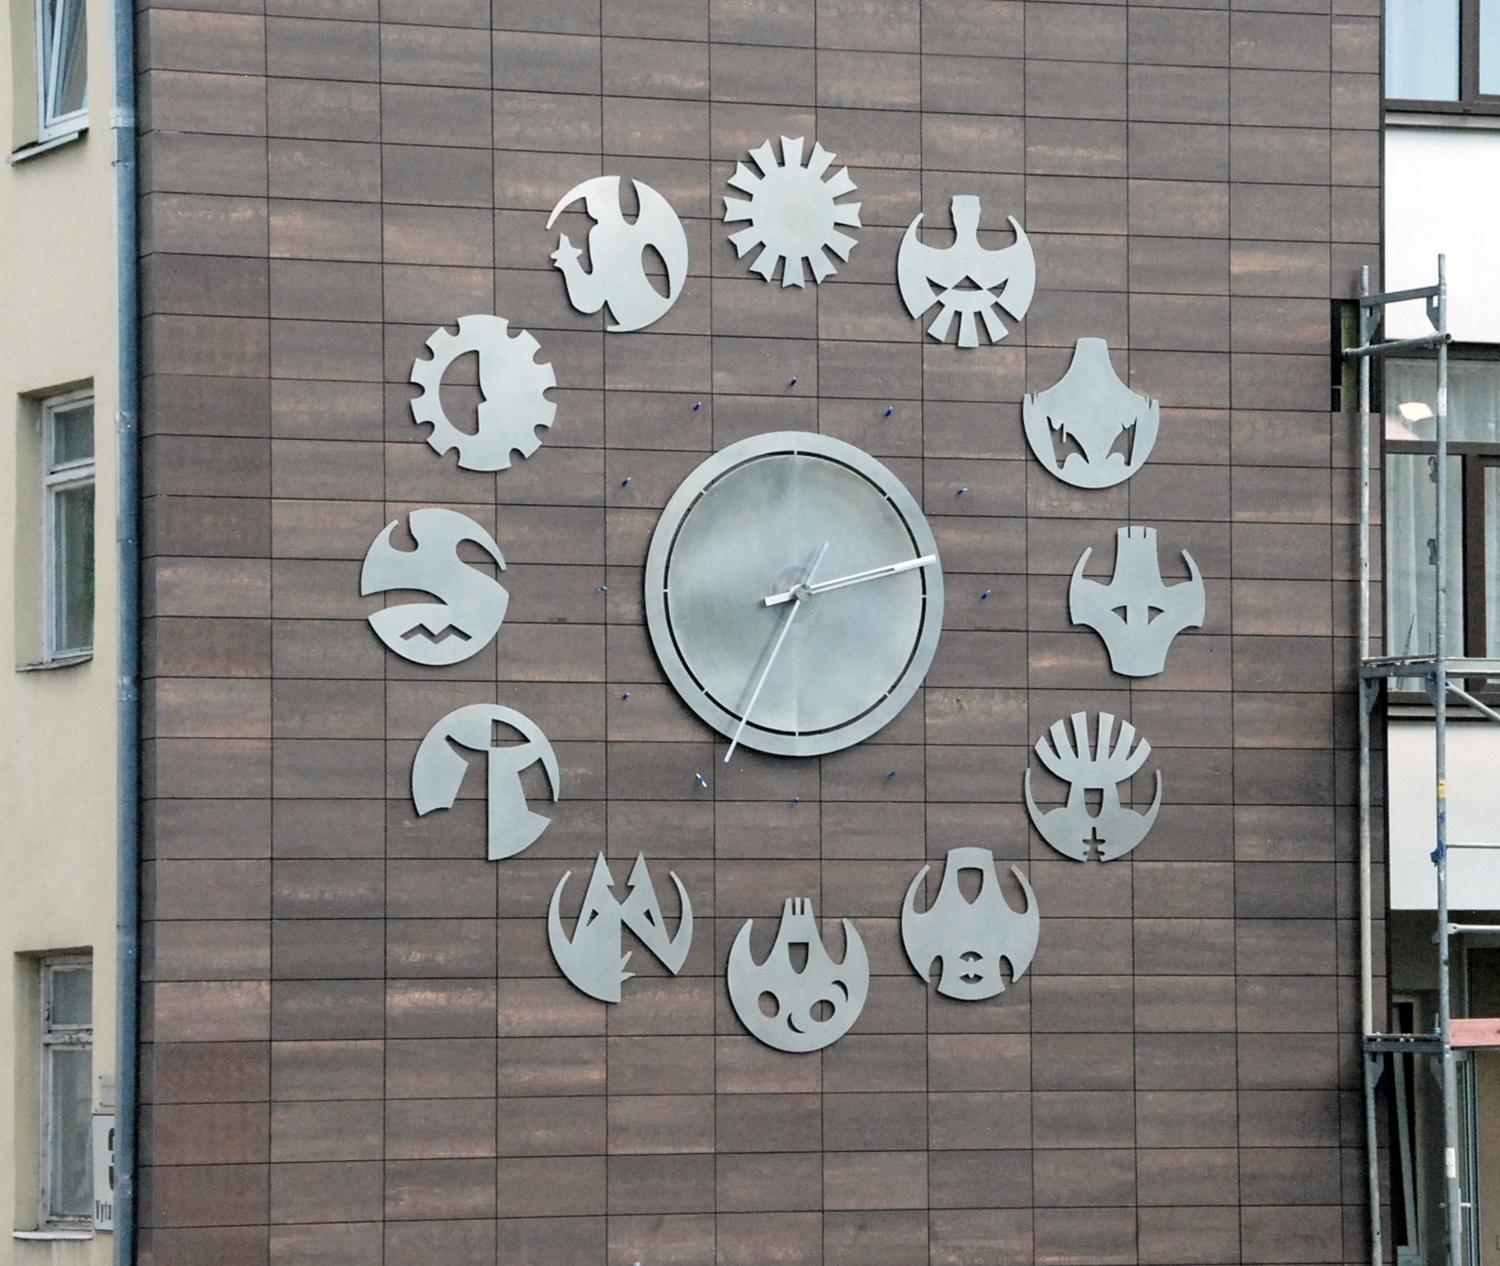 Laikrodis – tikra mistika... / Naujasis miesto laikrodis ėmė vėluoti… Gedimino Nemunaičio nuotr.